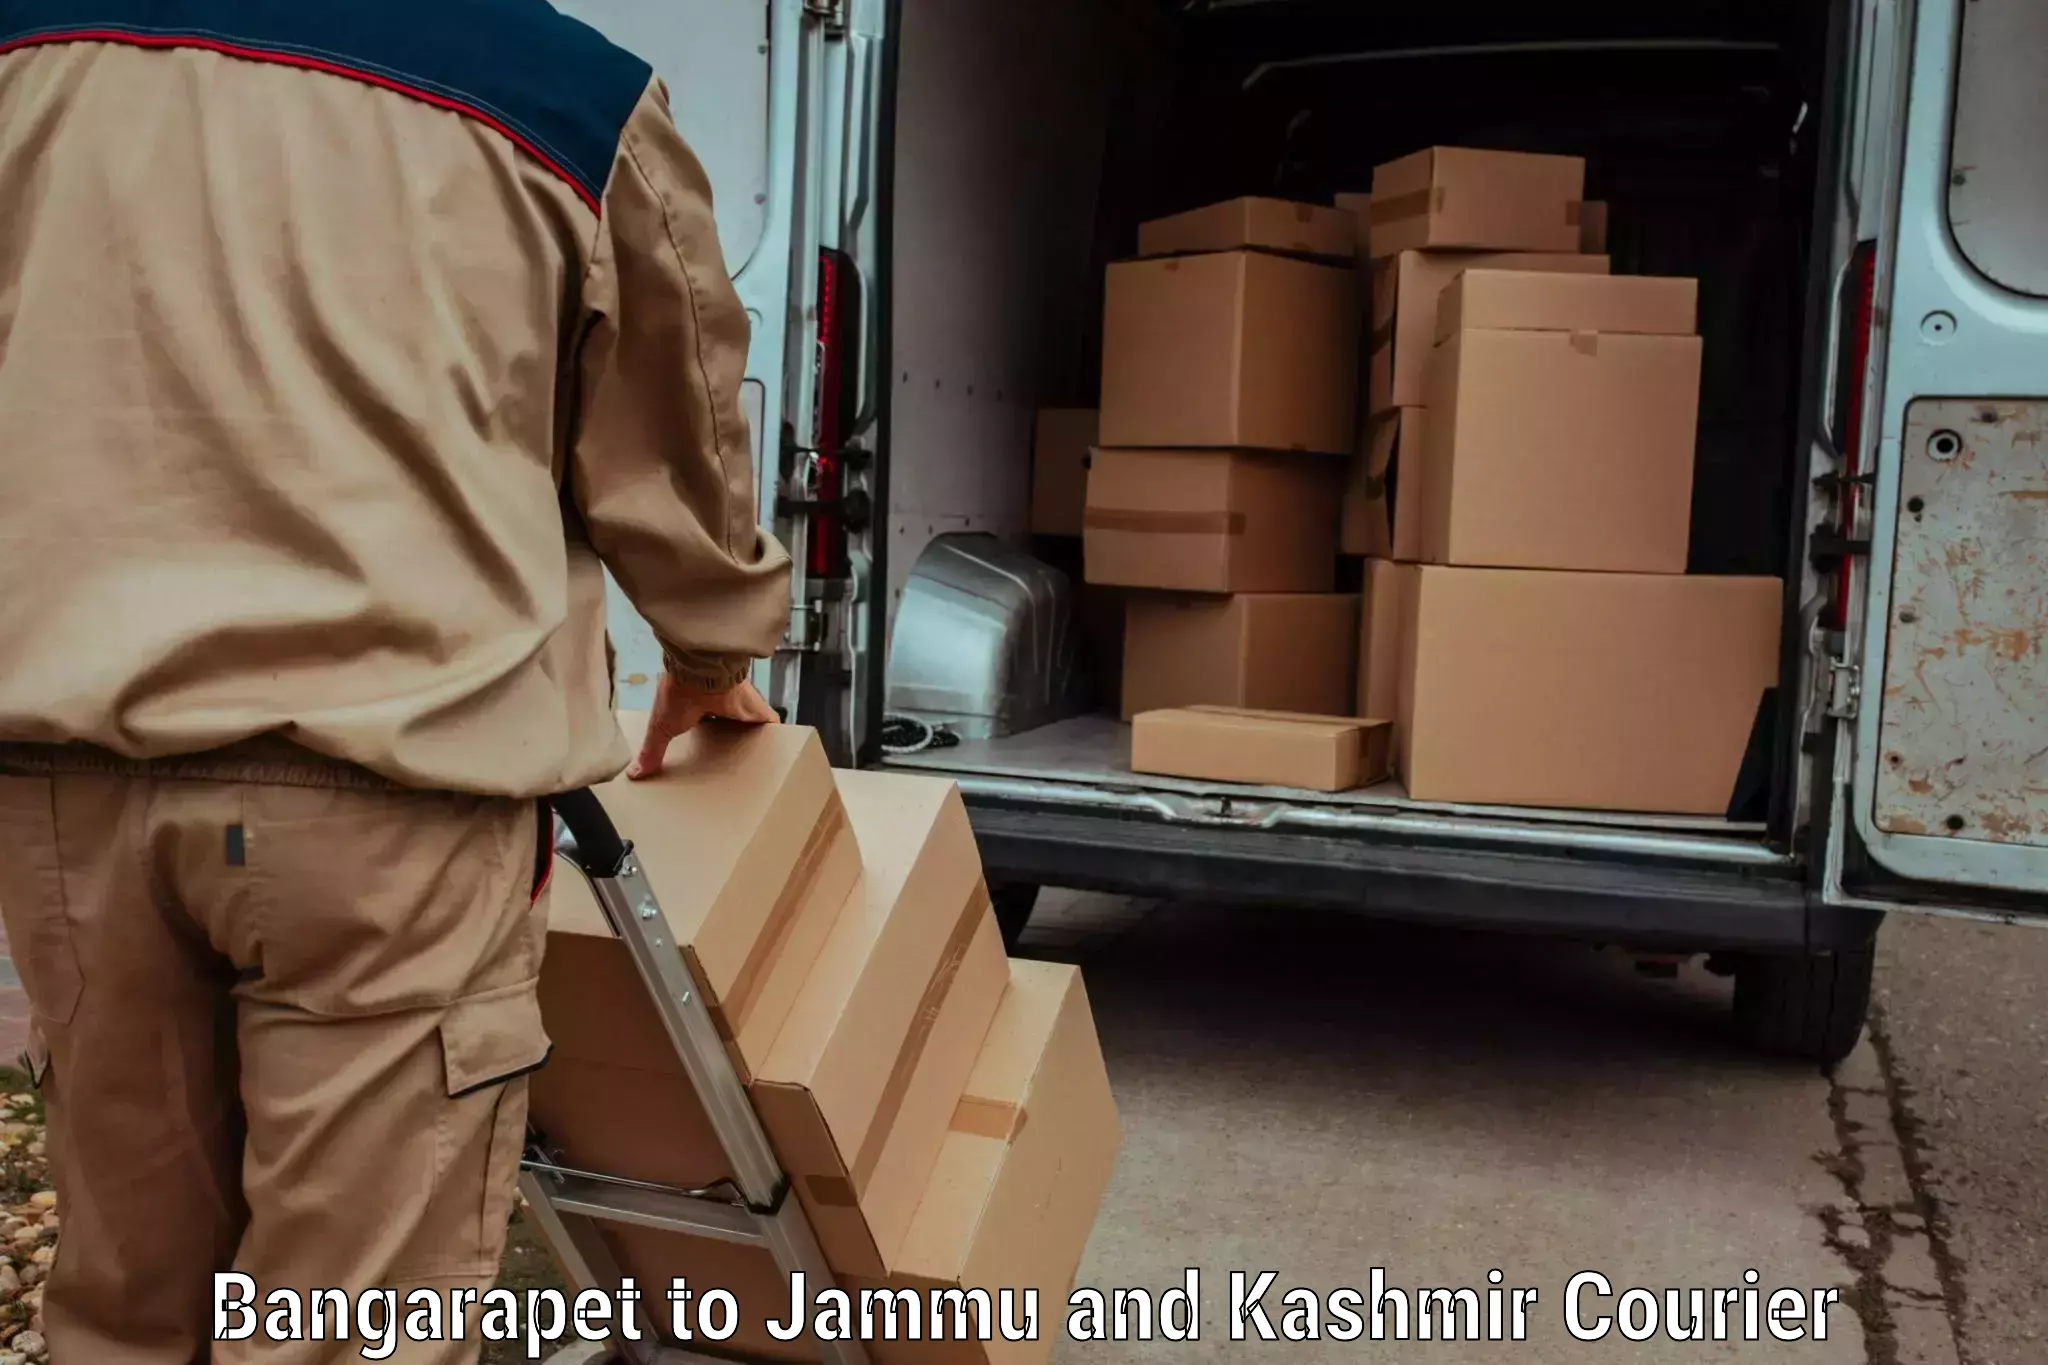 Package delivery network Bangarapet to Akhnoor